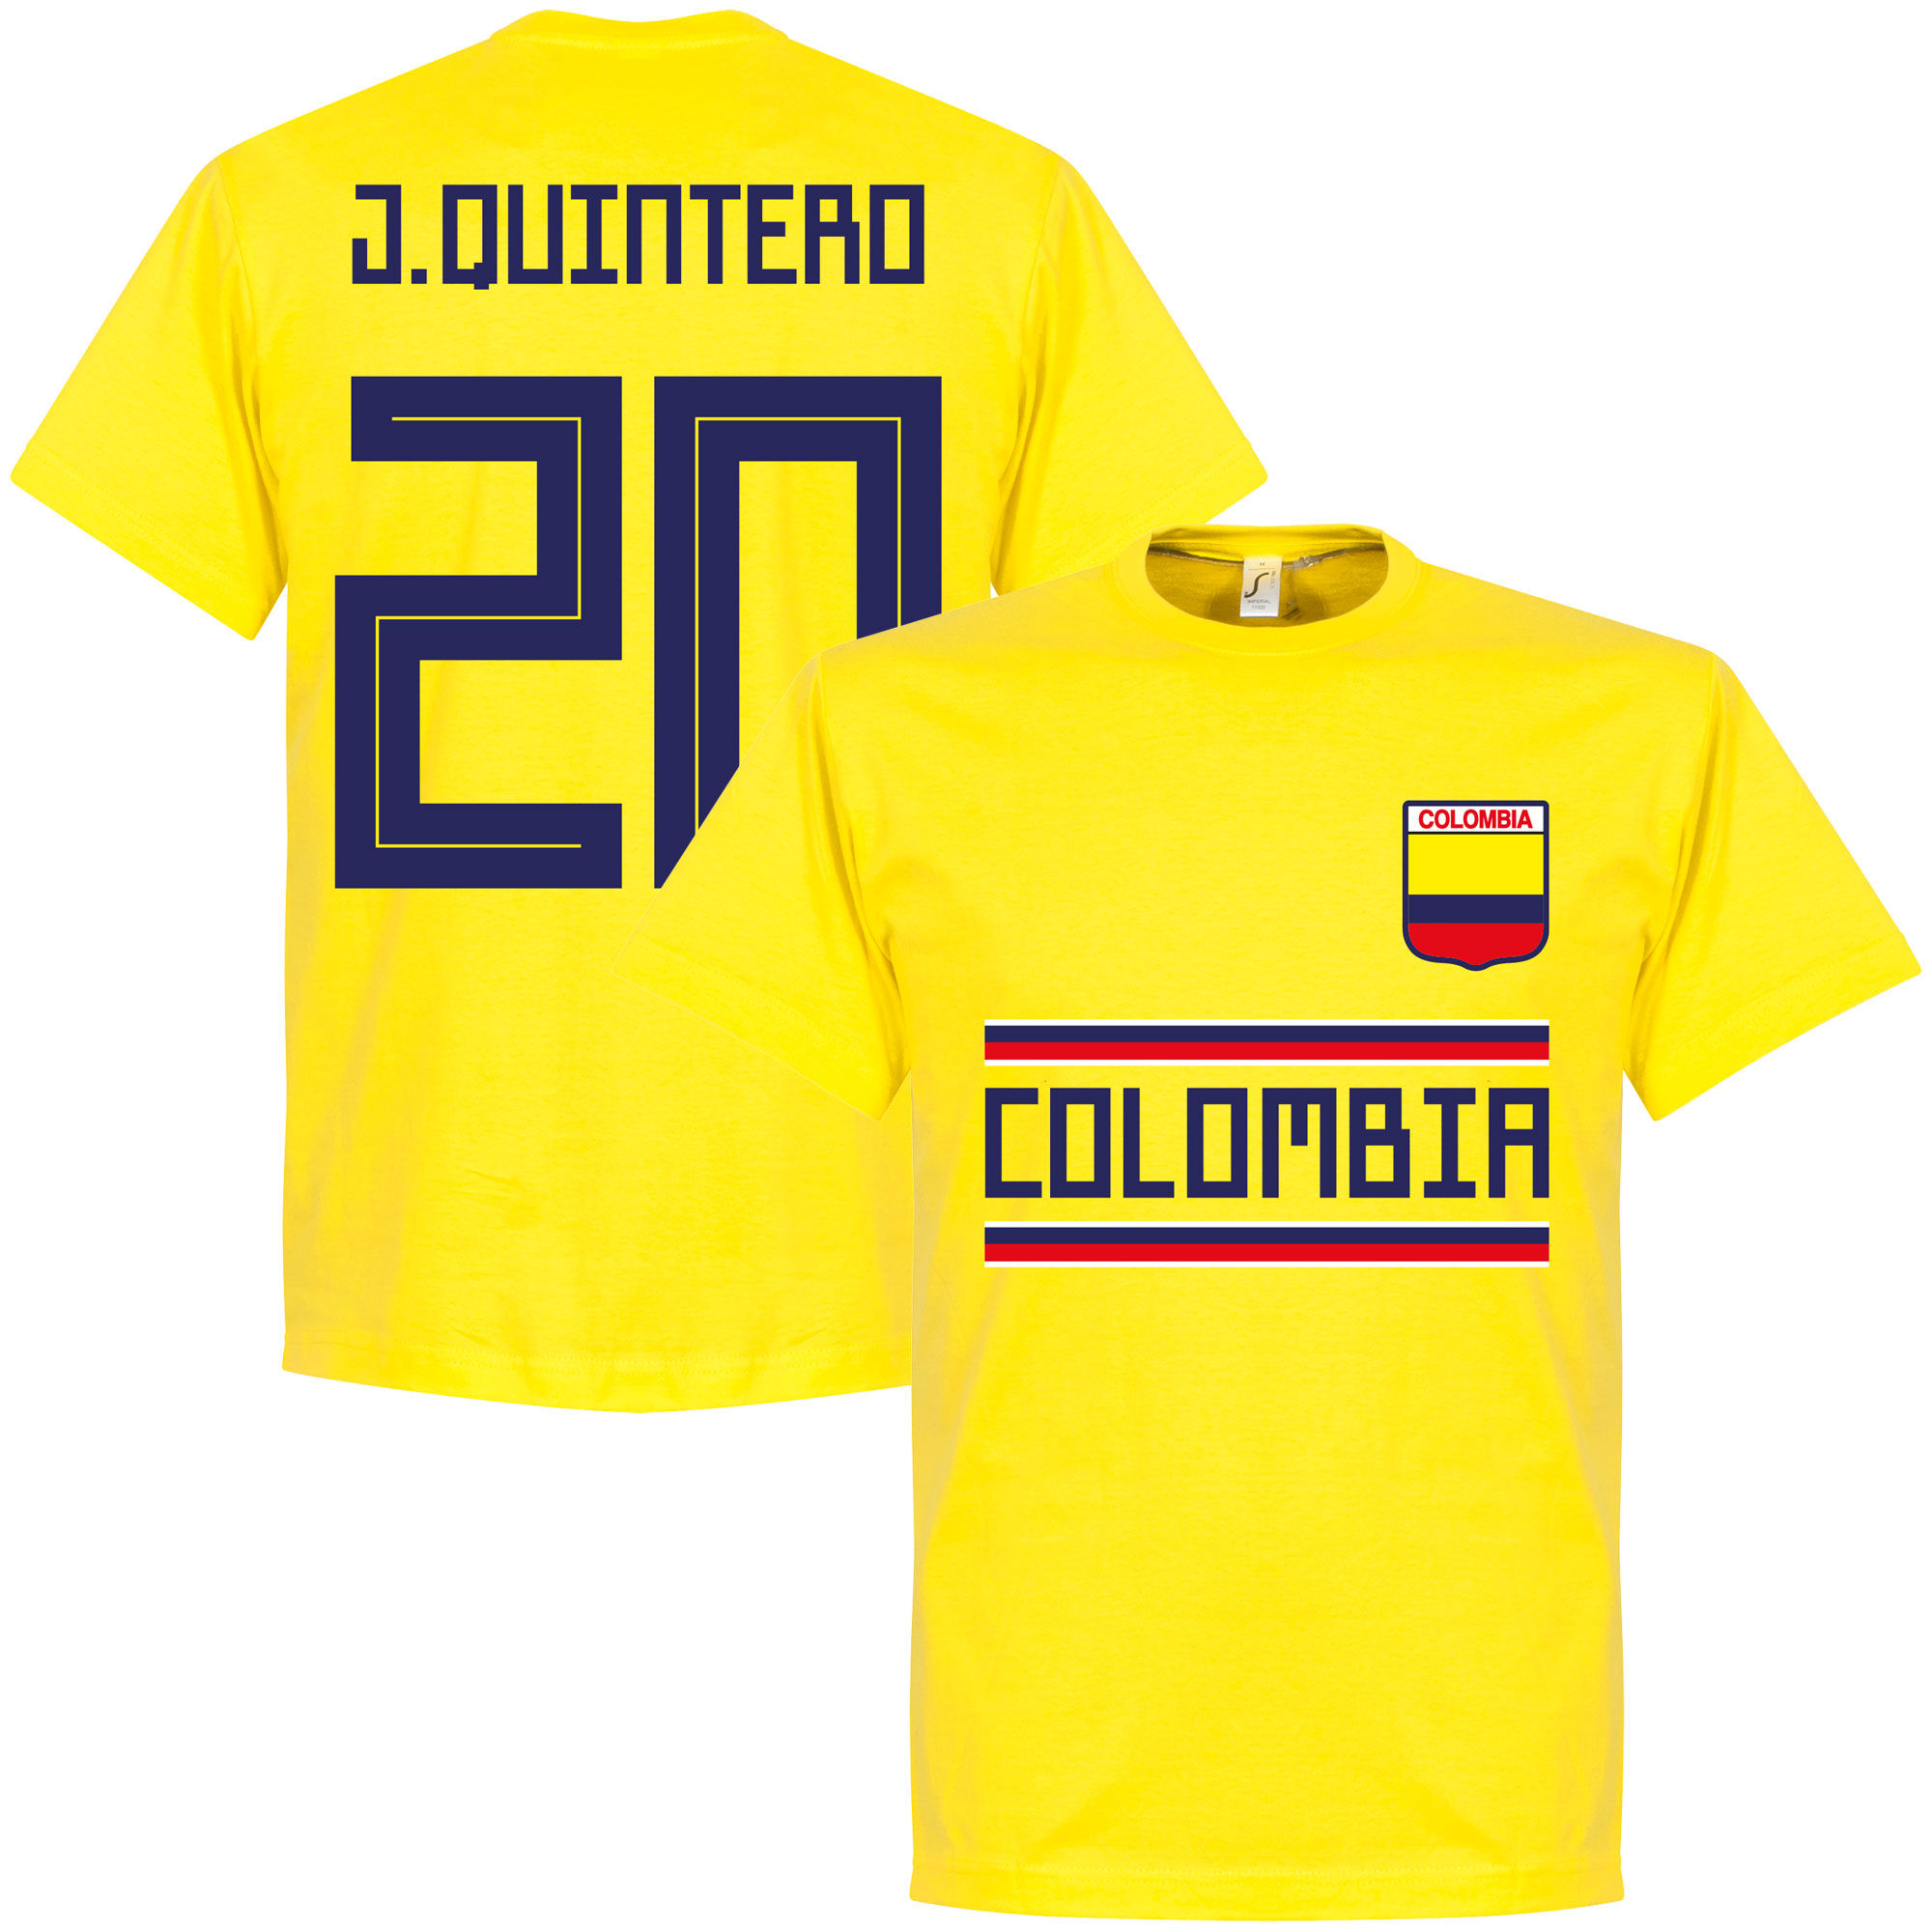 Kolumbie - Tričko - Juan Quintero, žluté, číslo 20